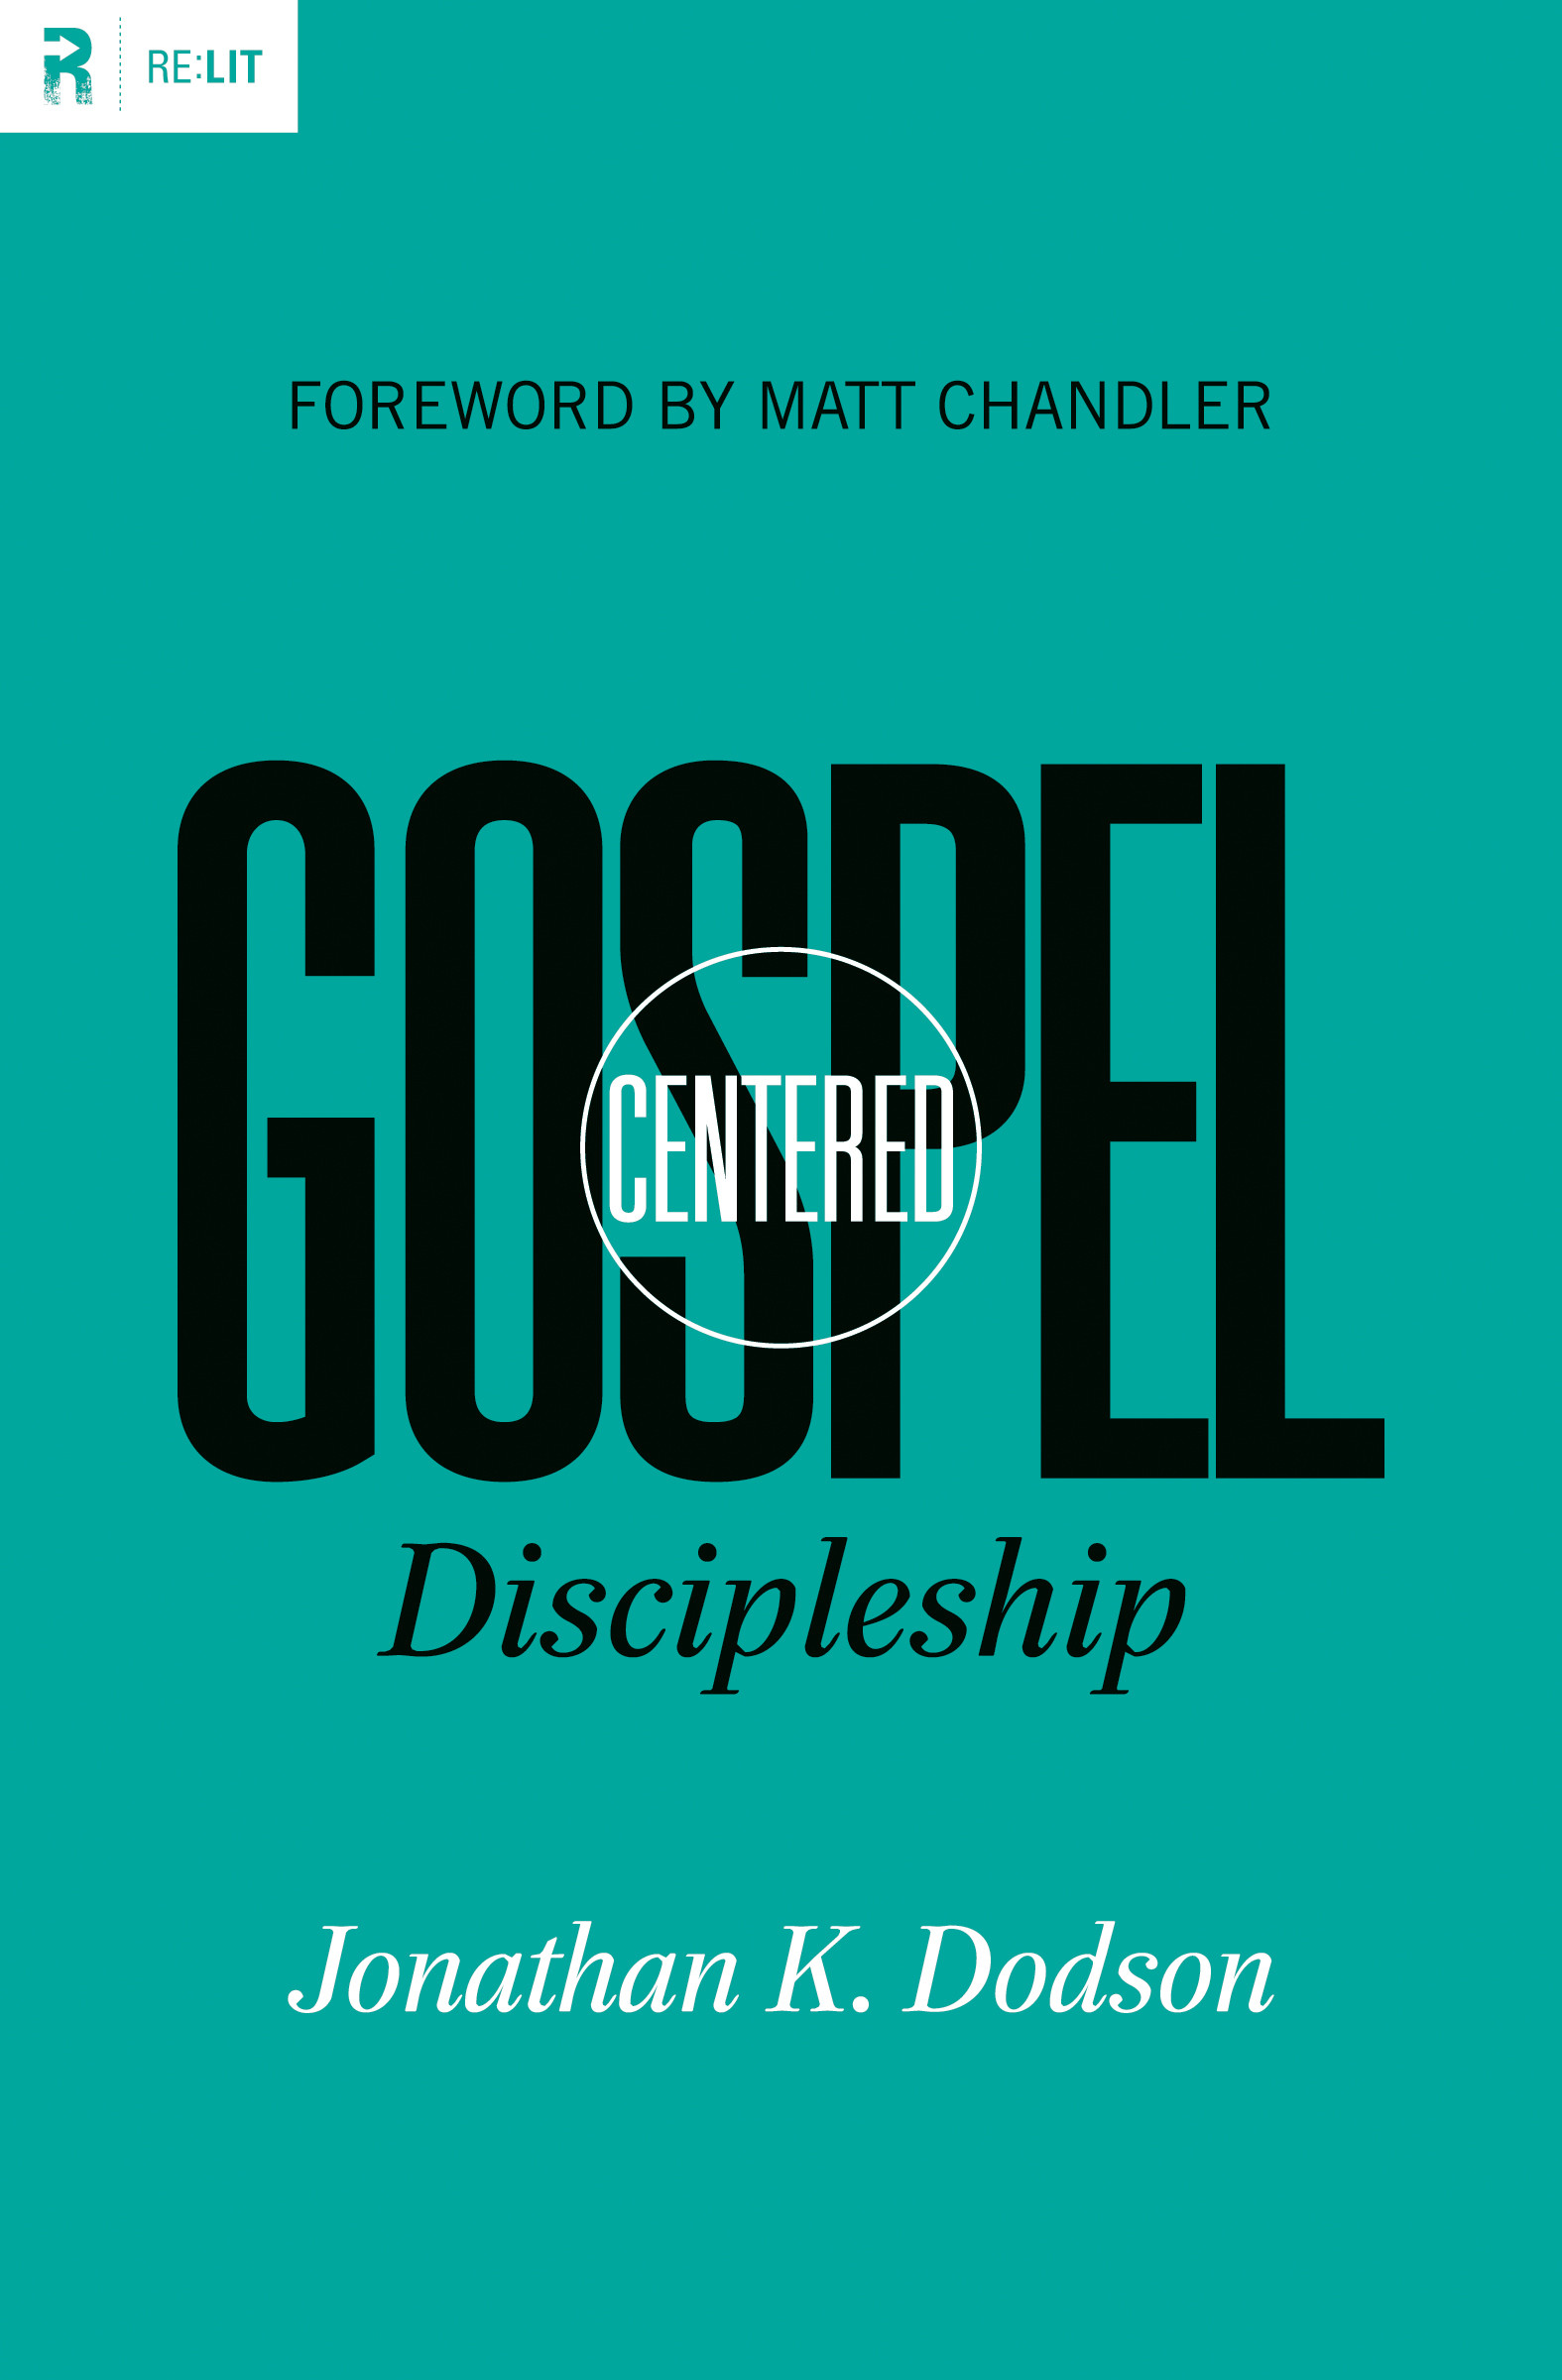 “Gospel Centered Discipleship”